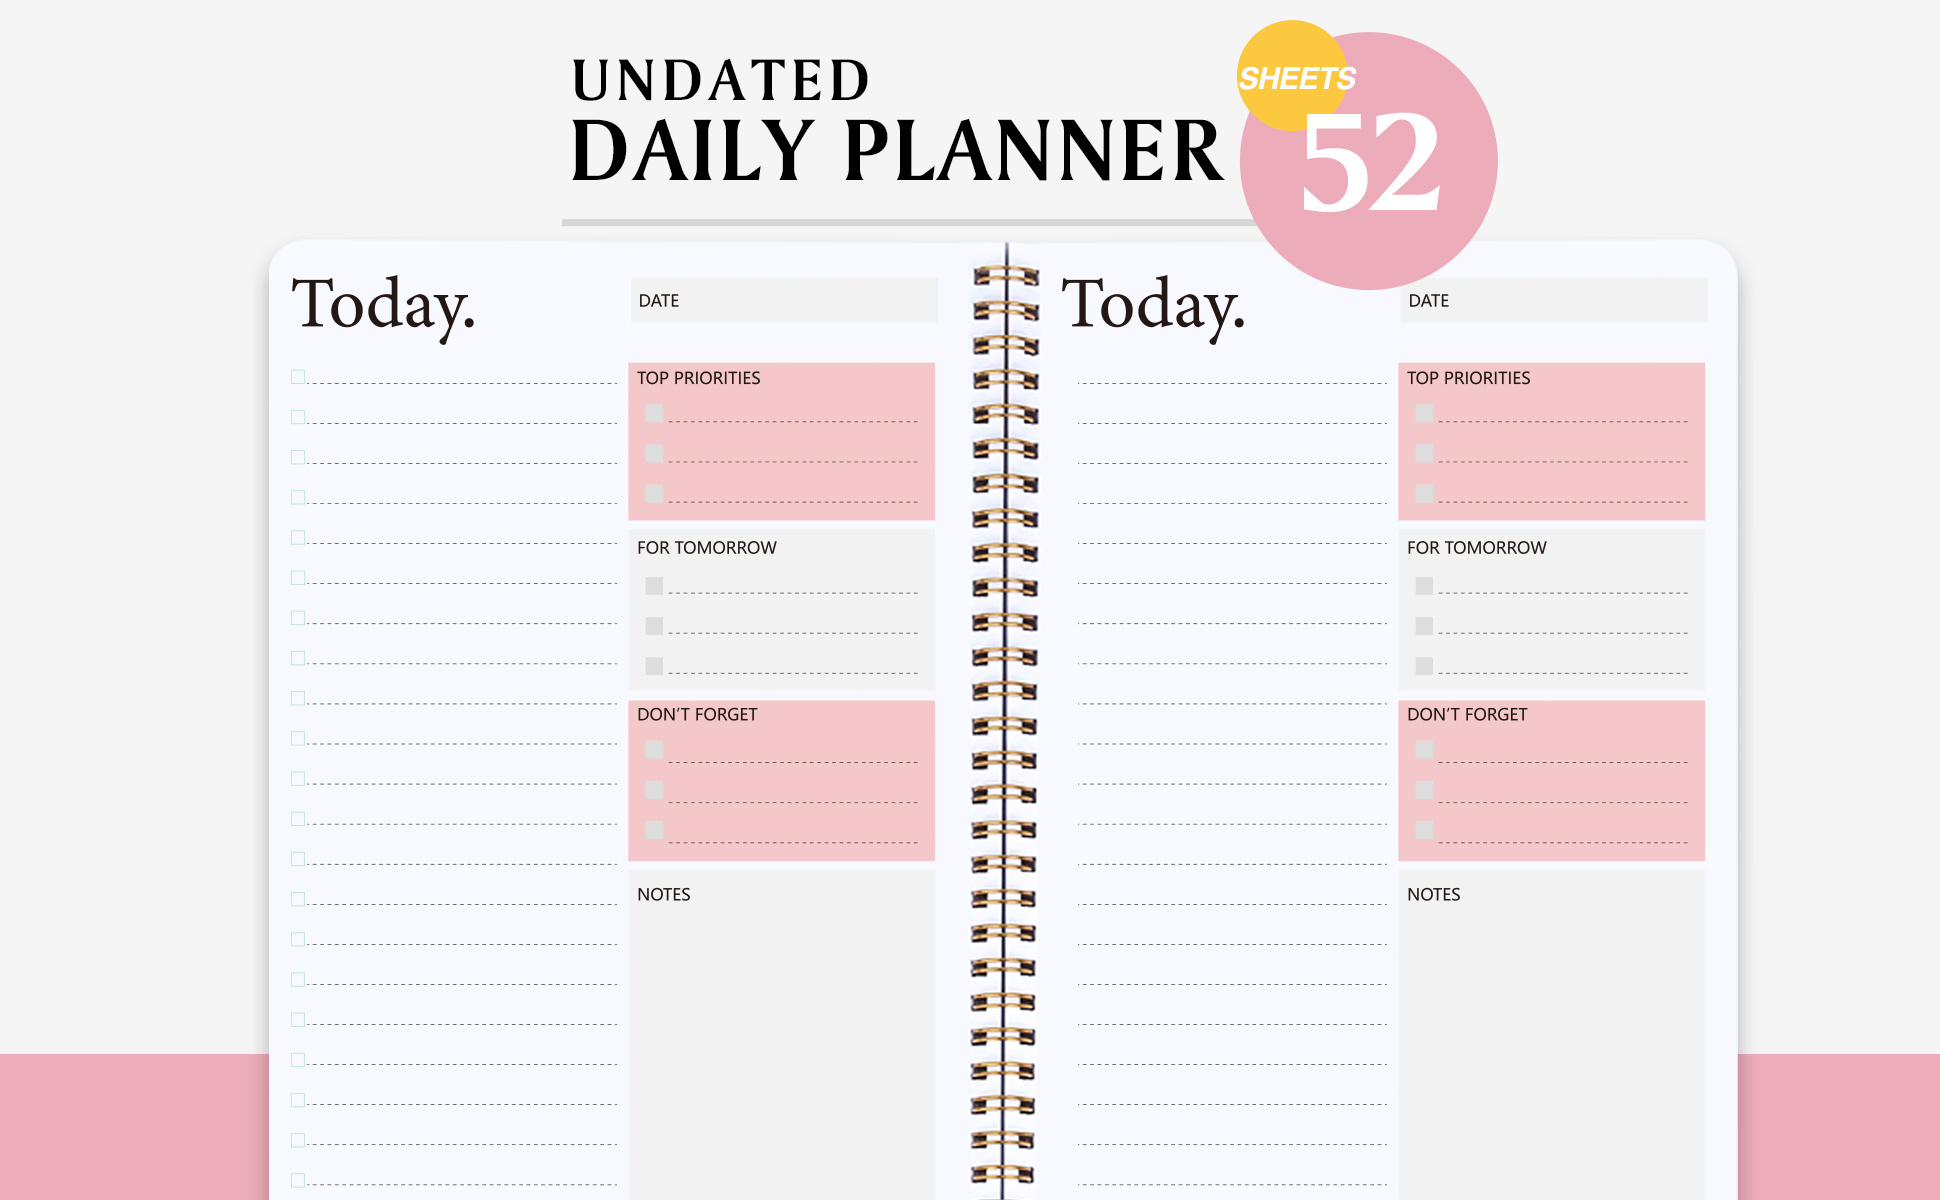 To Do List: Carnet de listes - planning des tâches et notes quotidiennes -  100 pages format 15.24 x 22.86 cm